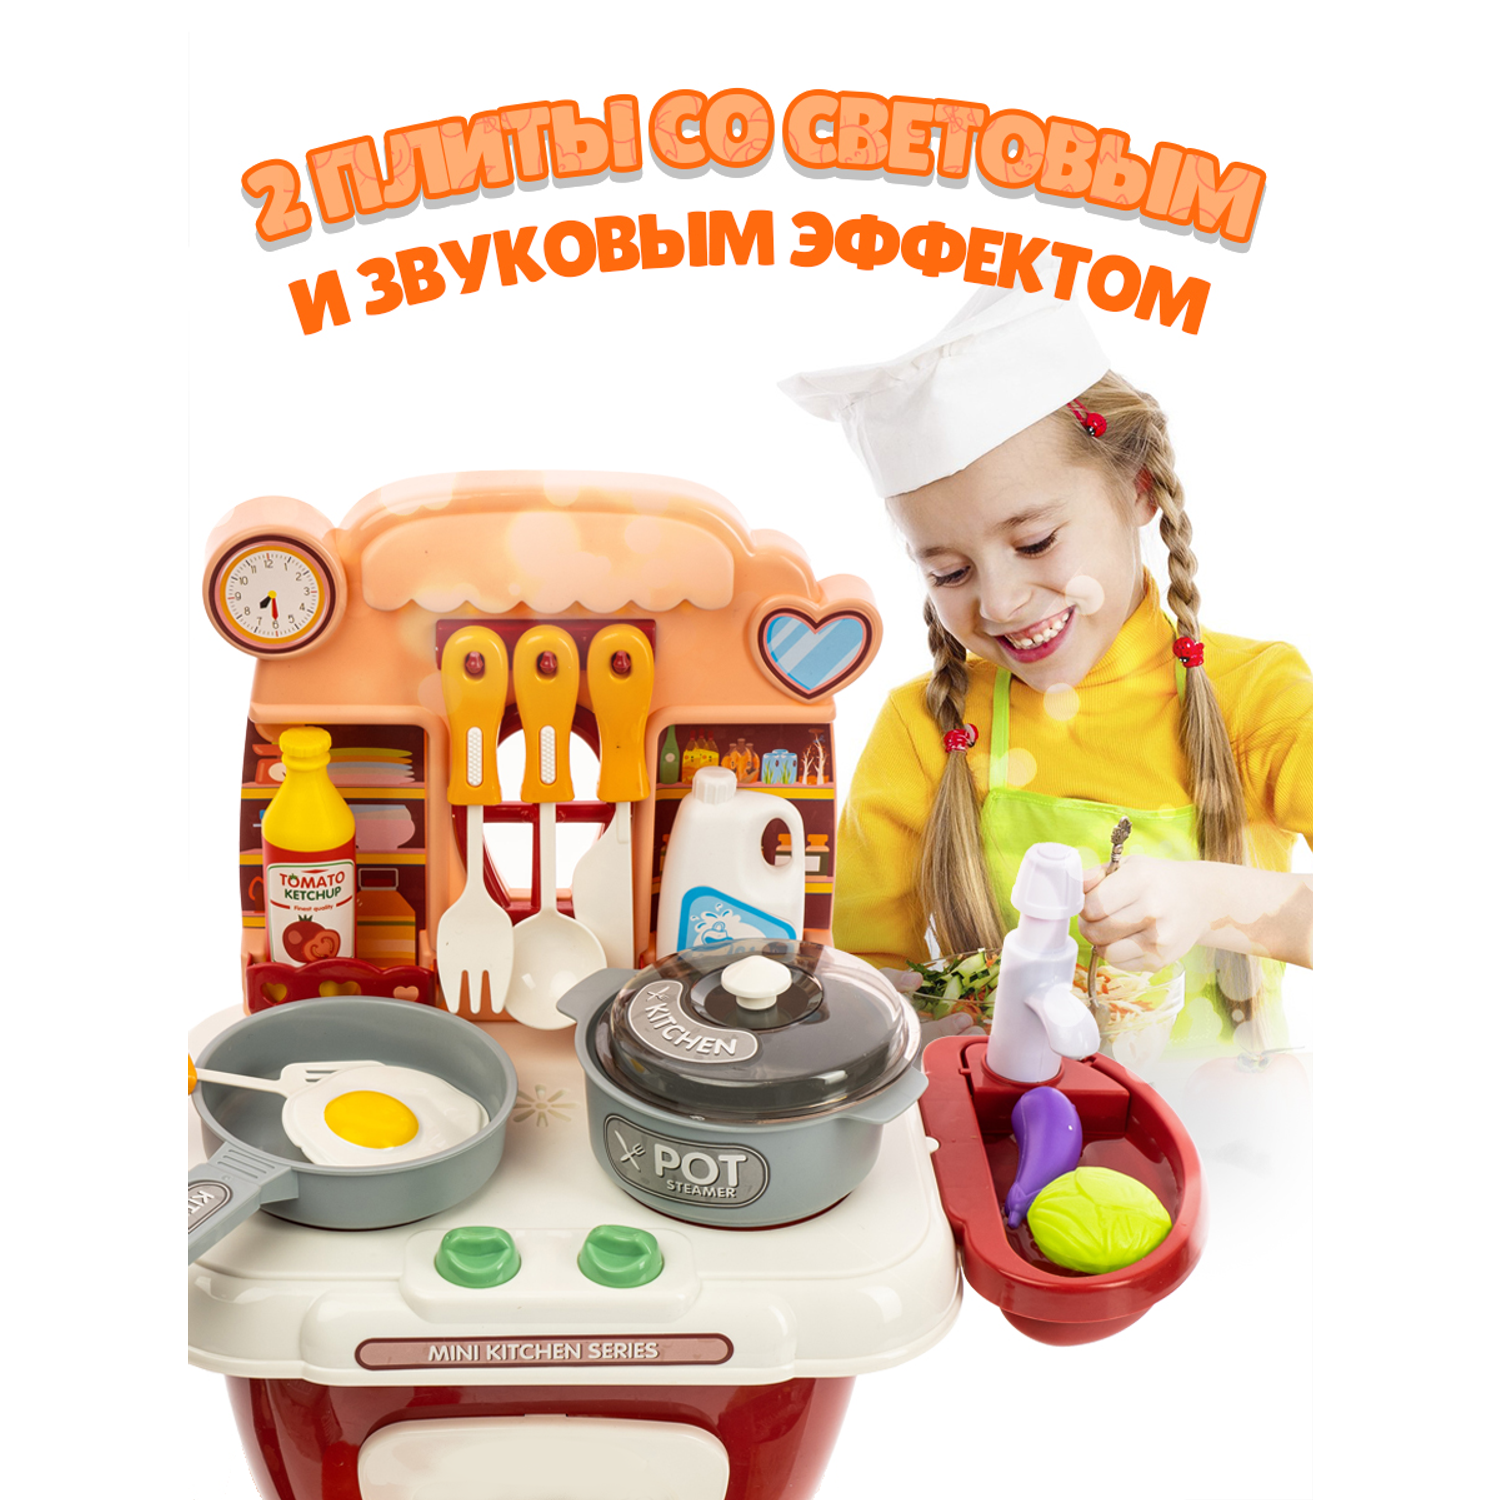 Игровой набор GRACE HOUSE Детская кухня с паром и кран с водой игрушечные продукты и посуда - фото 4